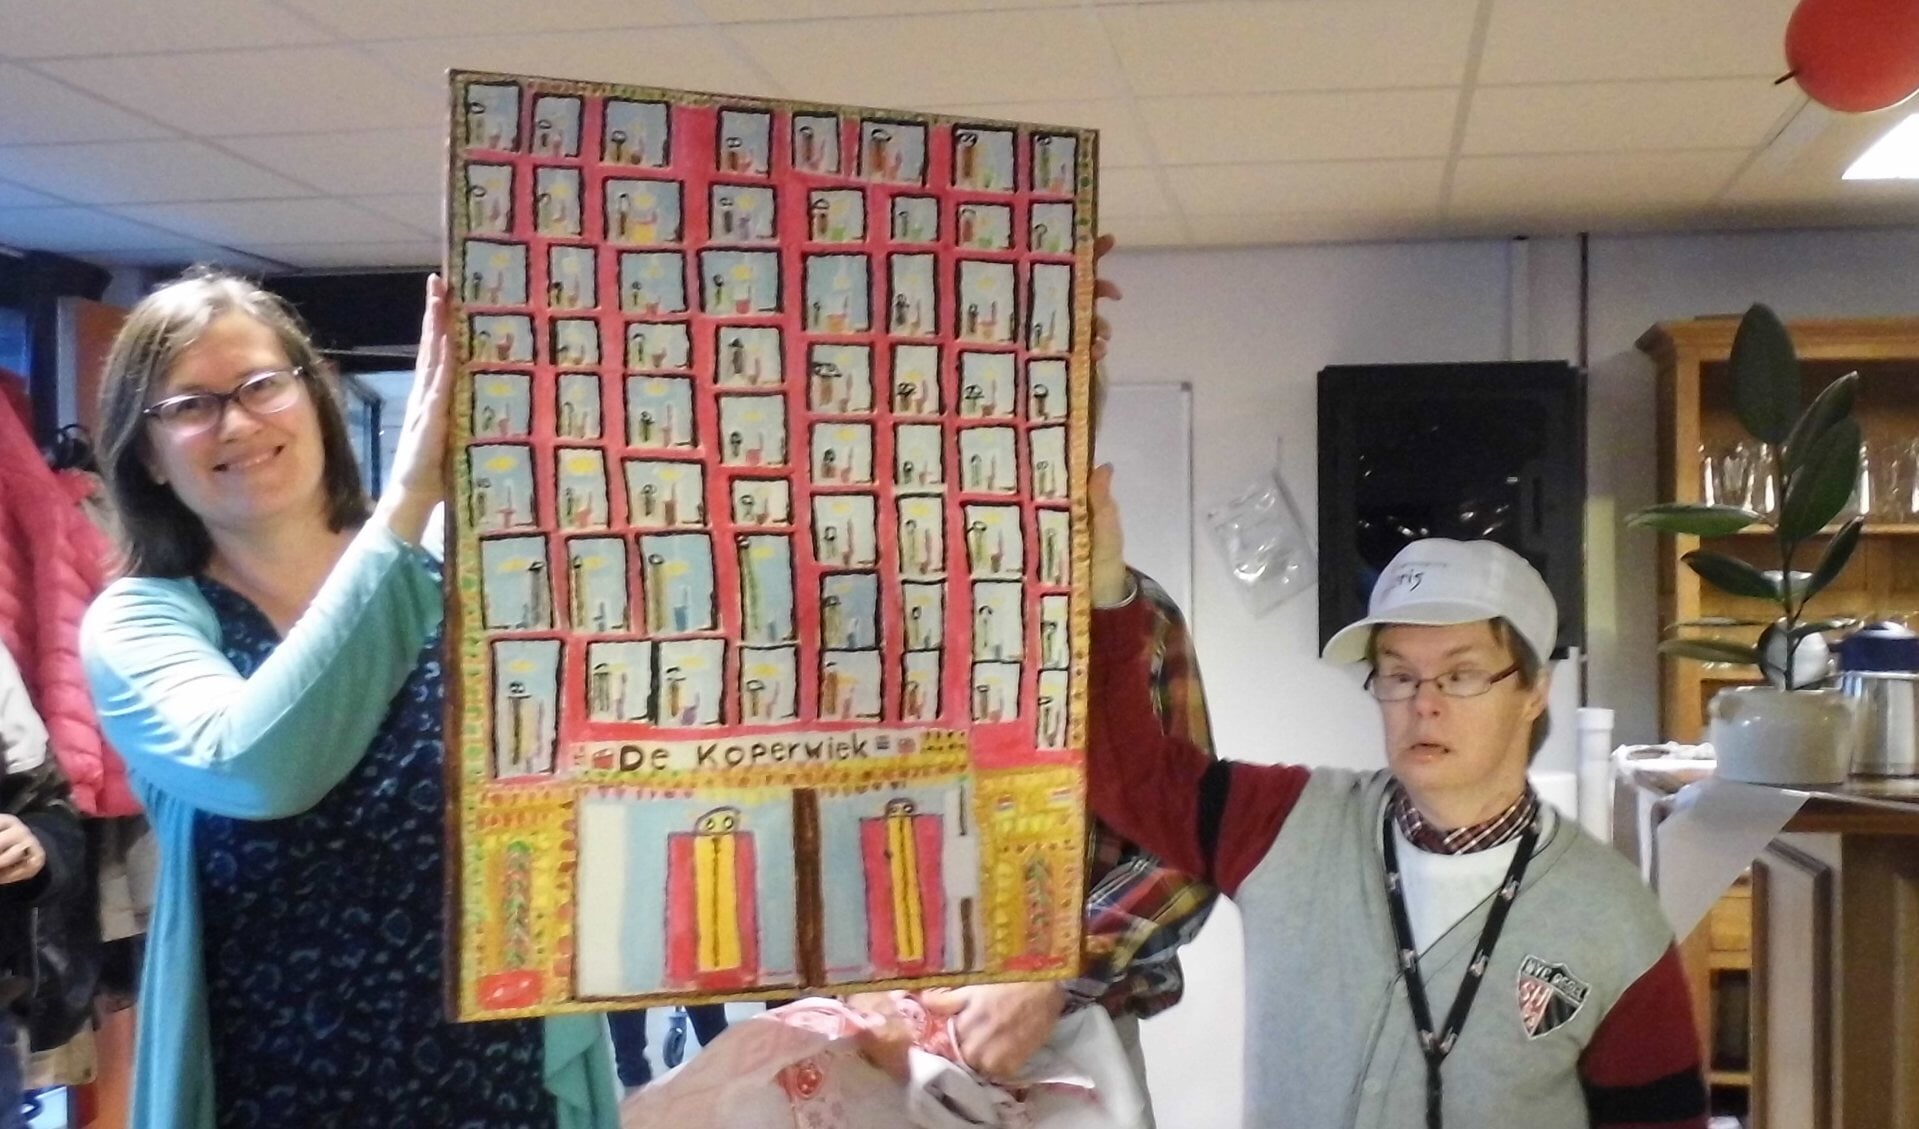 Kunstenaar Luuk overhandigt een zelfgeschilderd schilderij aan clustermanager Heleen van de Pijpekamp.